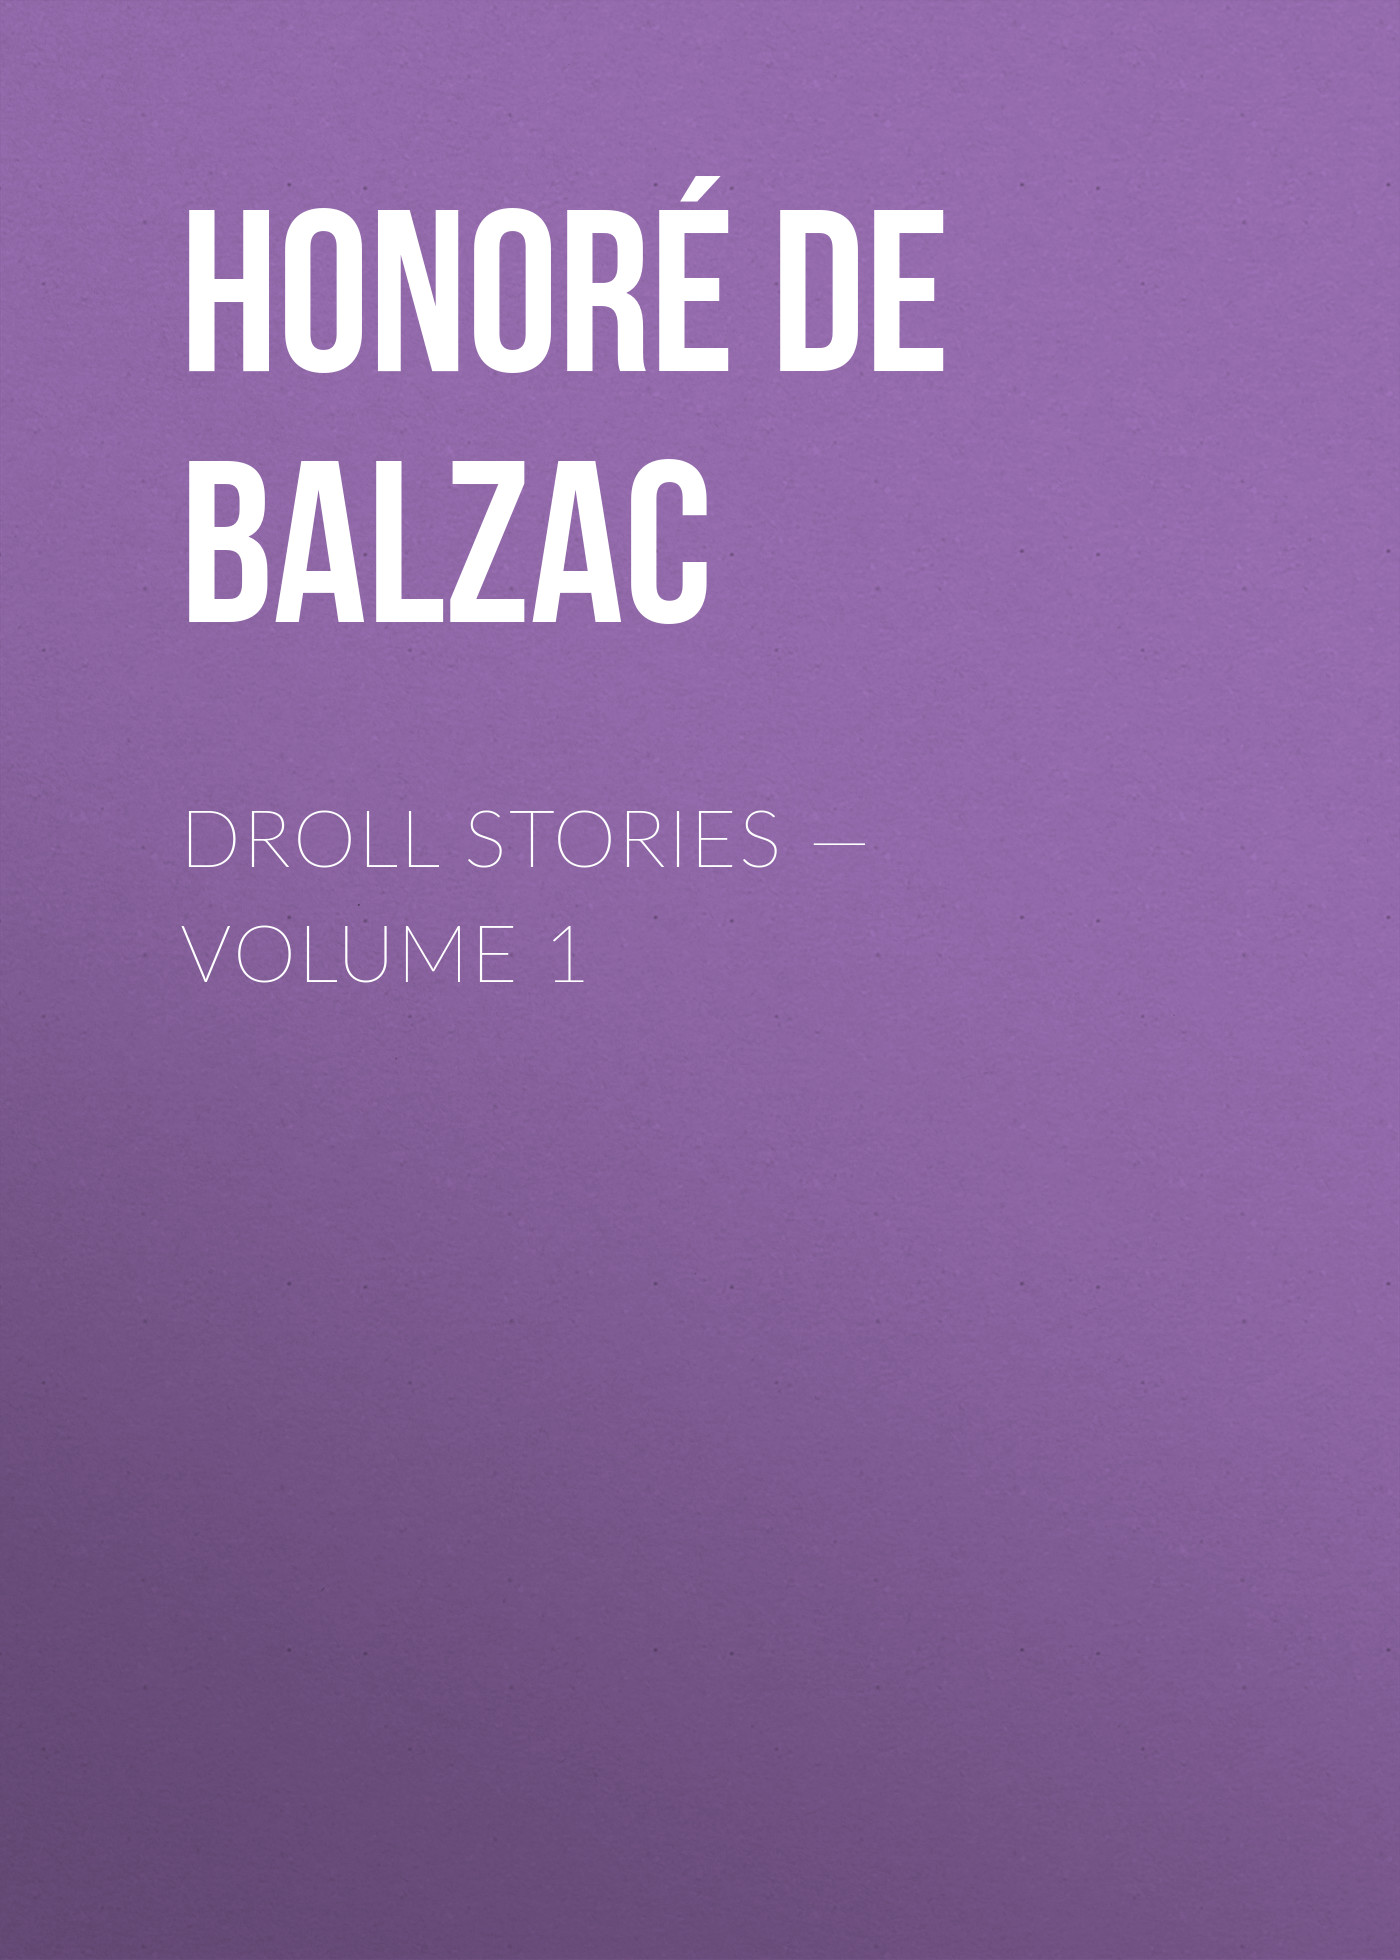 Книга Droll Stories – Volume 1 из серии , созданная Honoré Balzac, может относится к жанру Литература 19 века, Зарубежная старинная литература, Зарубежная классика. Стоимость электронной книги Droll Stories – Volume 1 с идентификатором 25020139 составляет 0 руб.